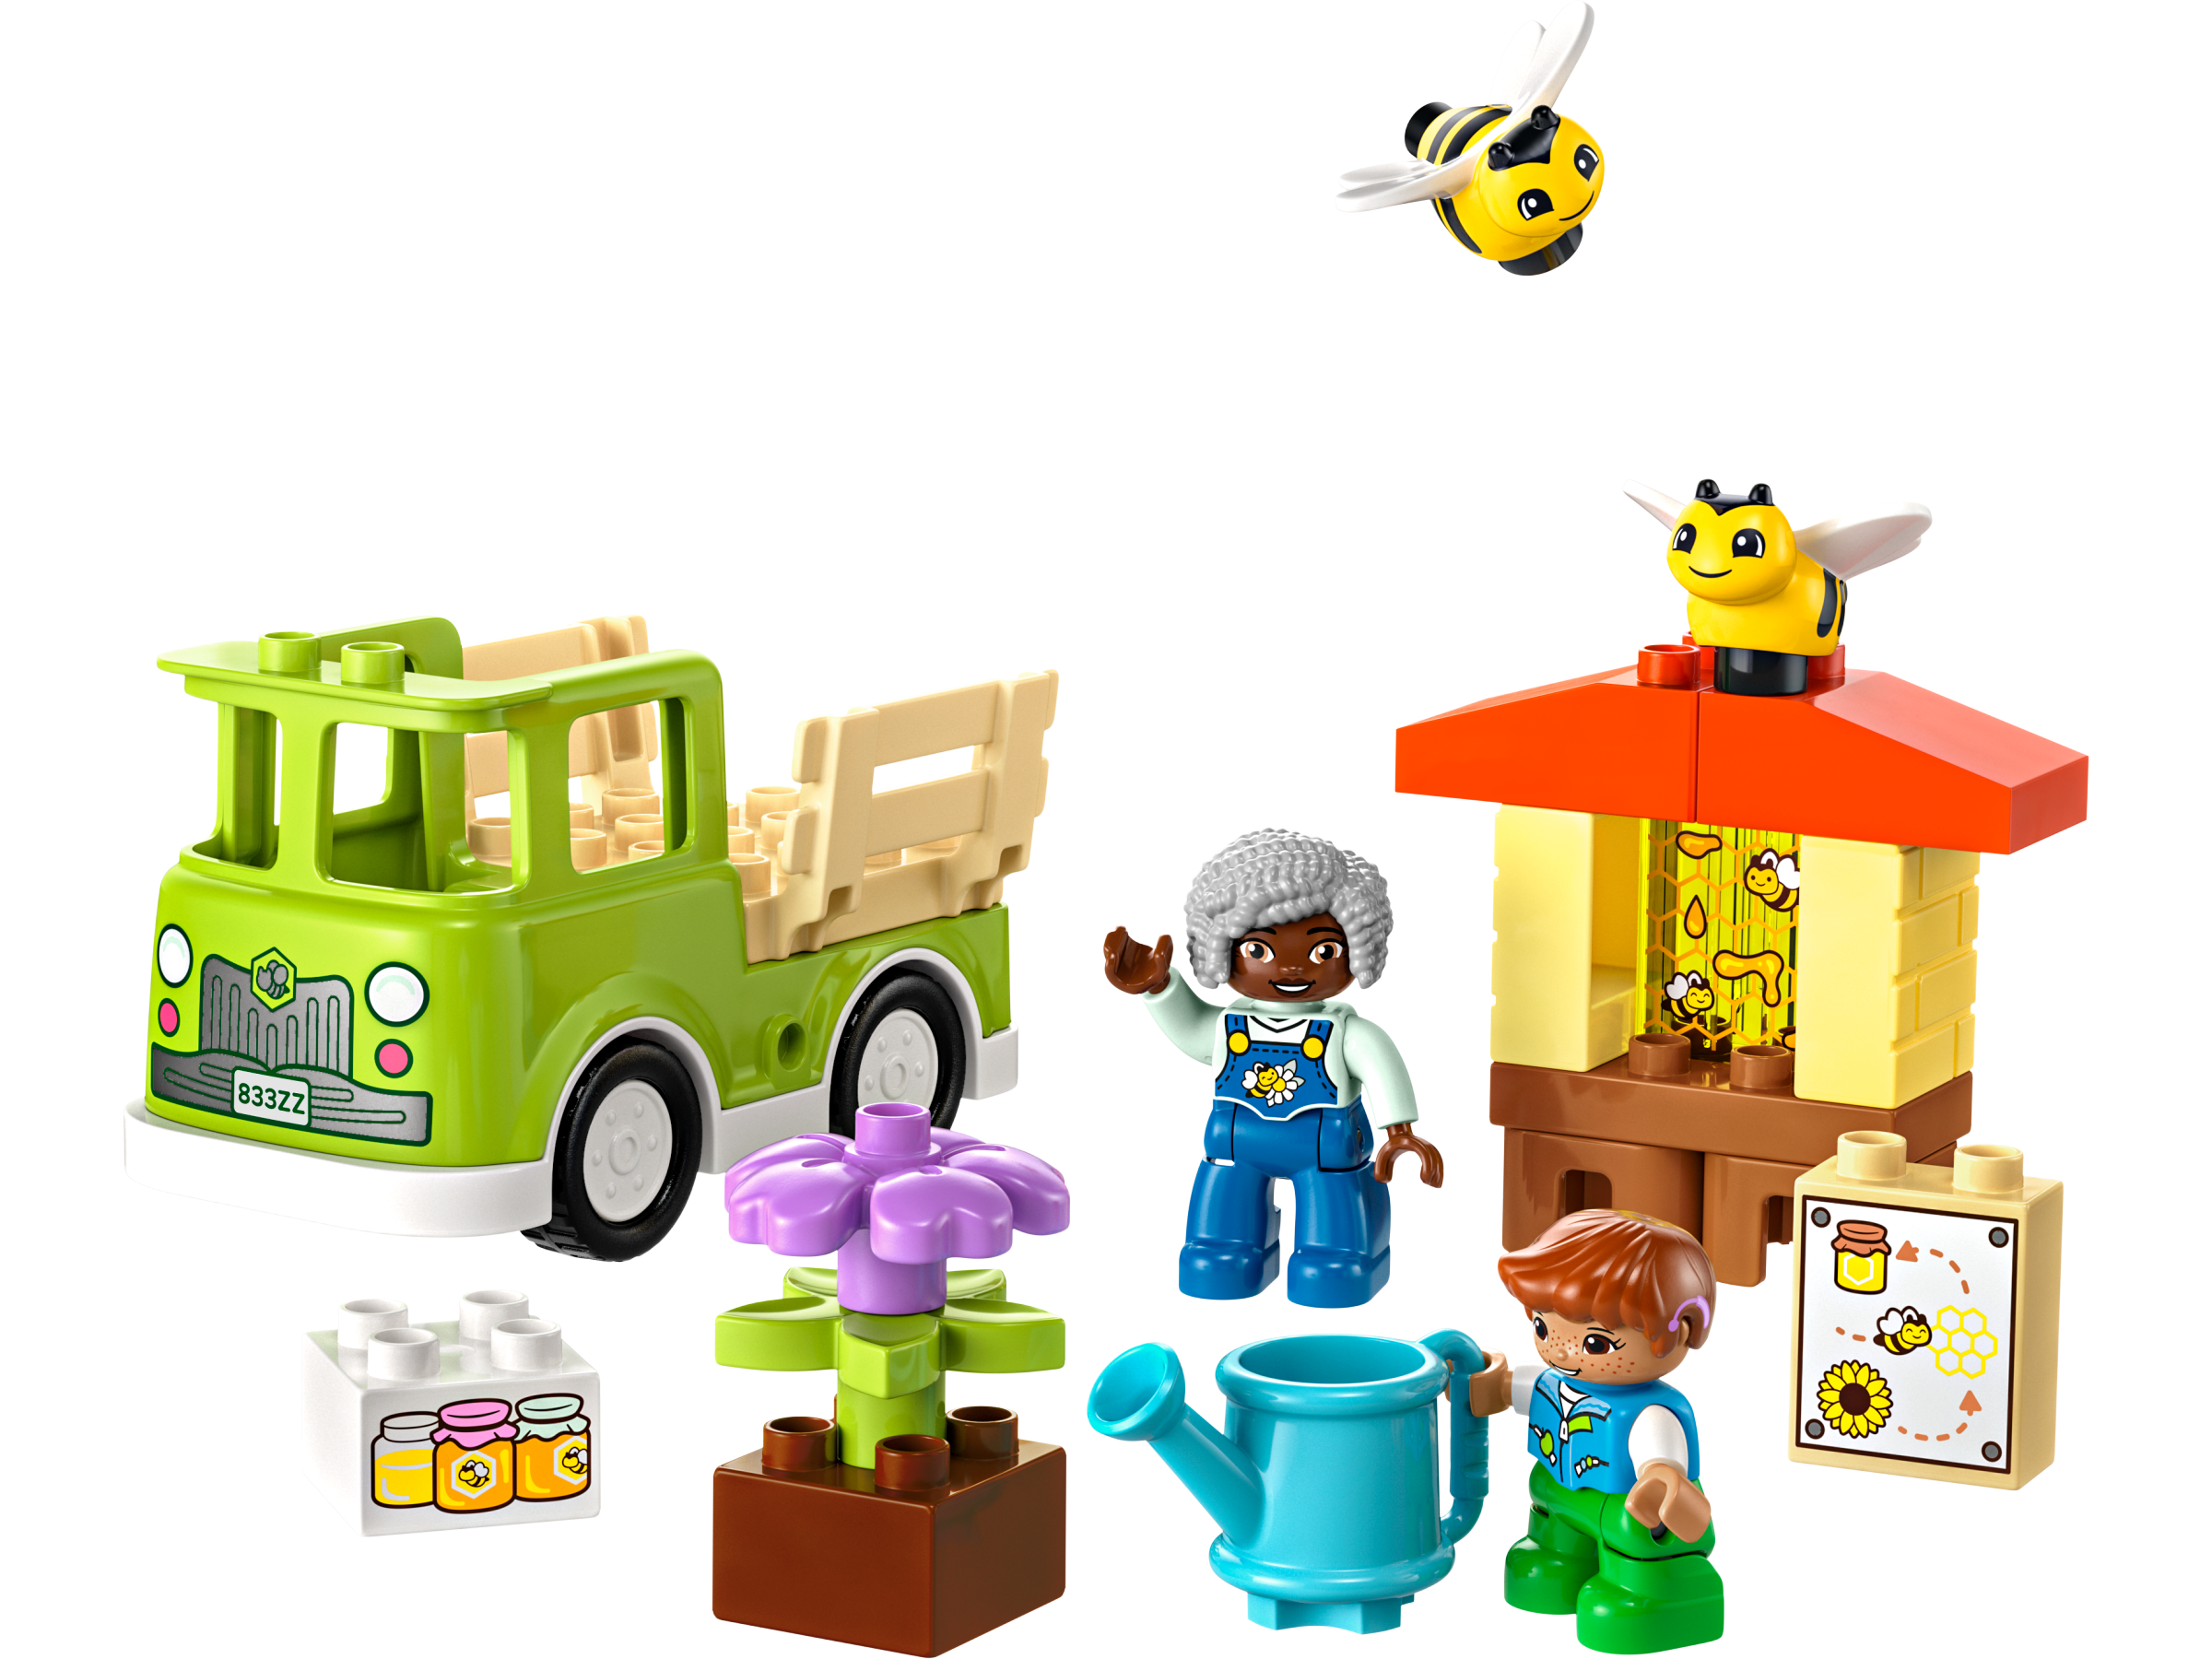 Đồ Chơi Lắp Ráp Nông Trại Ong Của Bé - Caring For Bees & Beehives - Lego Duplo 10419 (22 Mảnh Ghép)